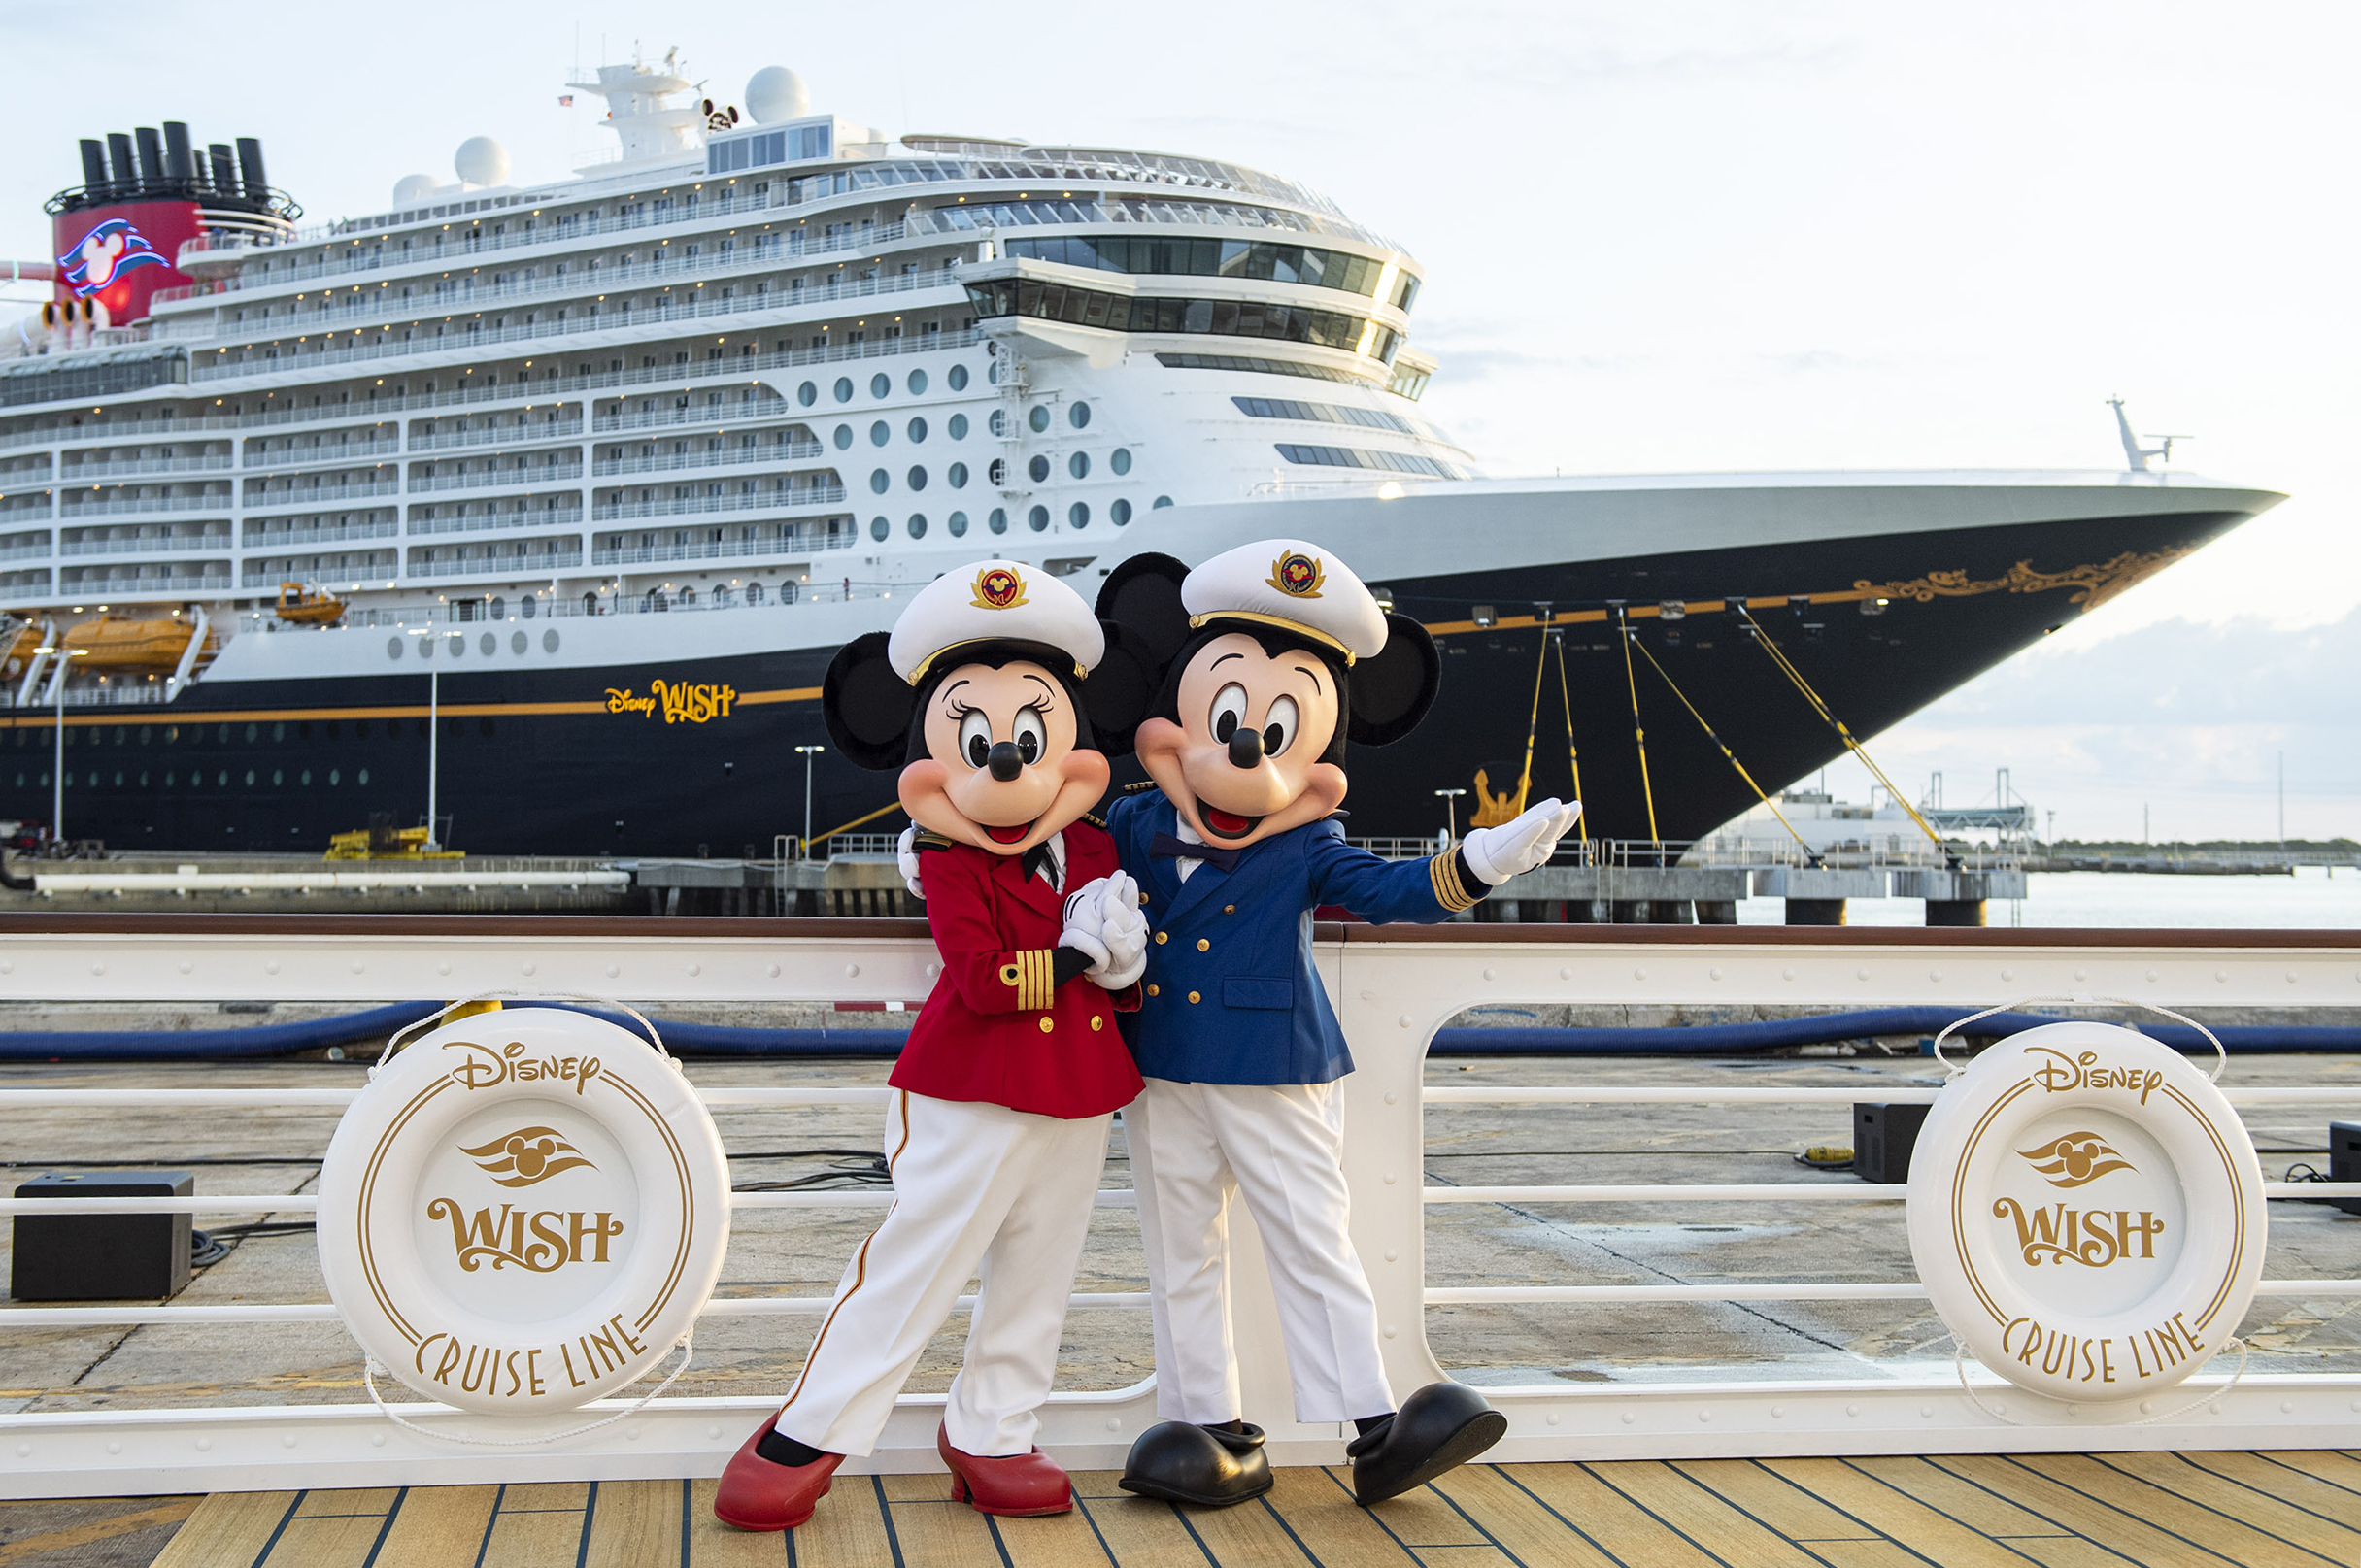 Das Kreuzfahrtschiff Disney Wish ist sowohl für Kinder als auch für Erwachsene geeignet und verfügt über „die allererste Disney-Attraktion auf See“.